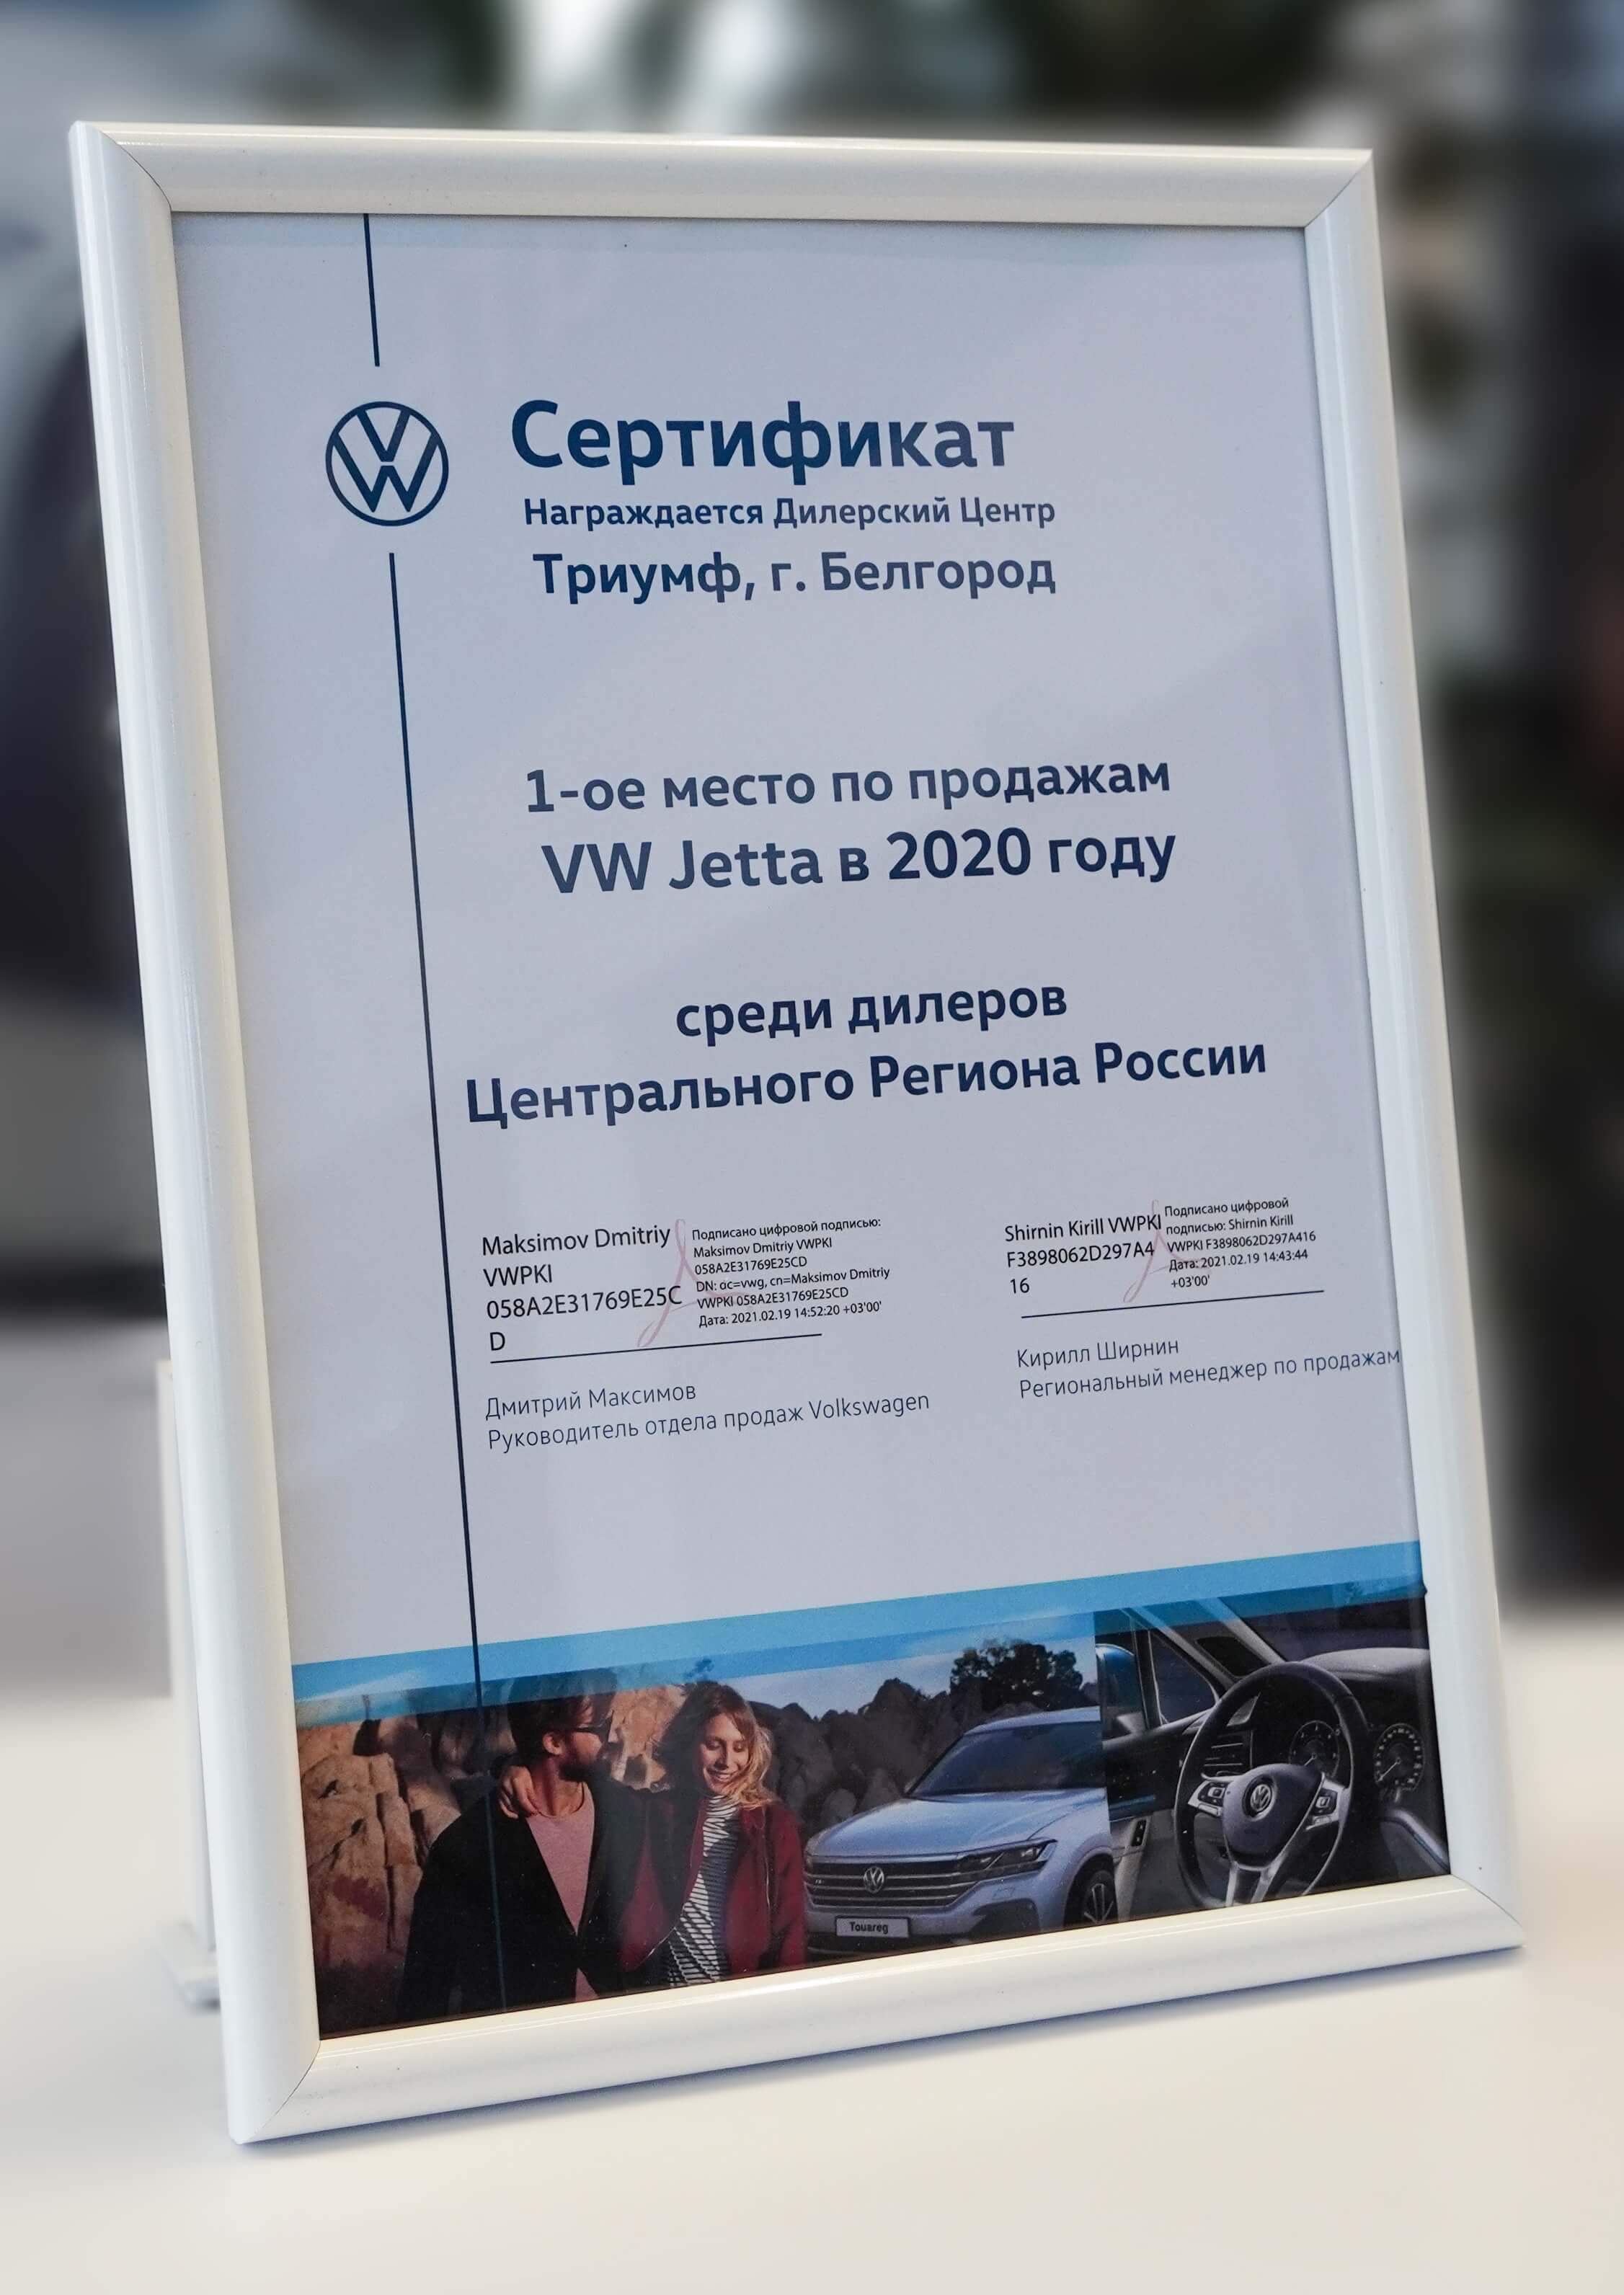 1-ое место по продажам VW Jetta в 2020 году среди дилеров Центрального региона России.